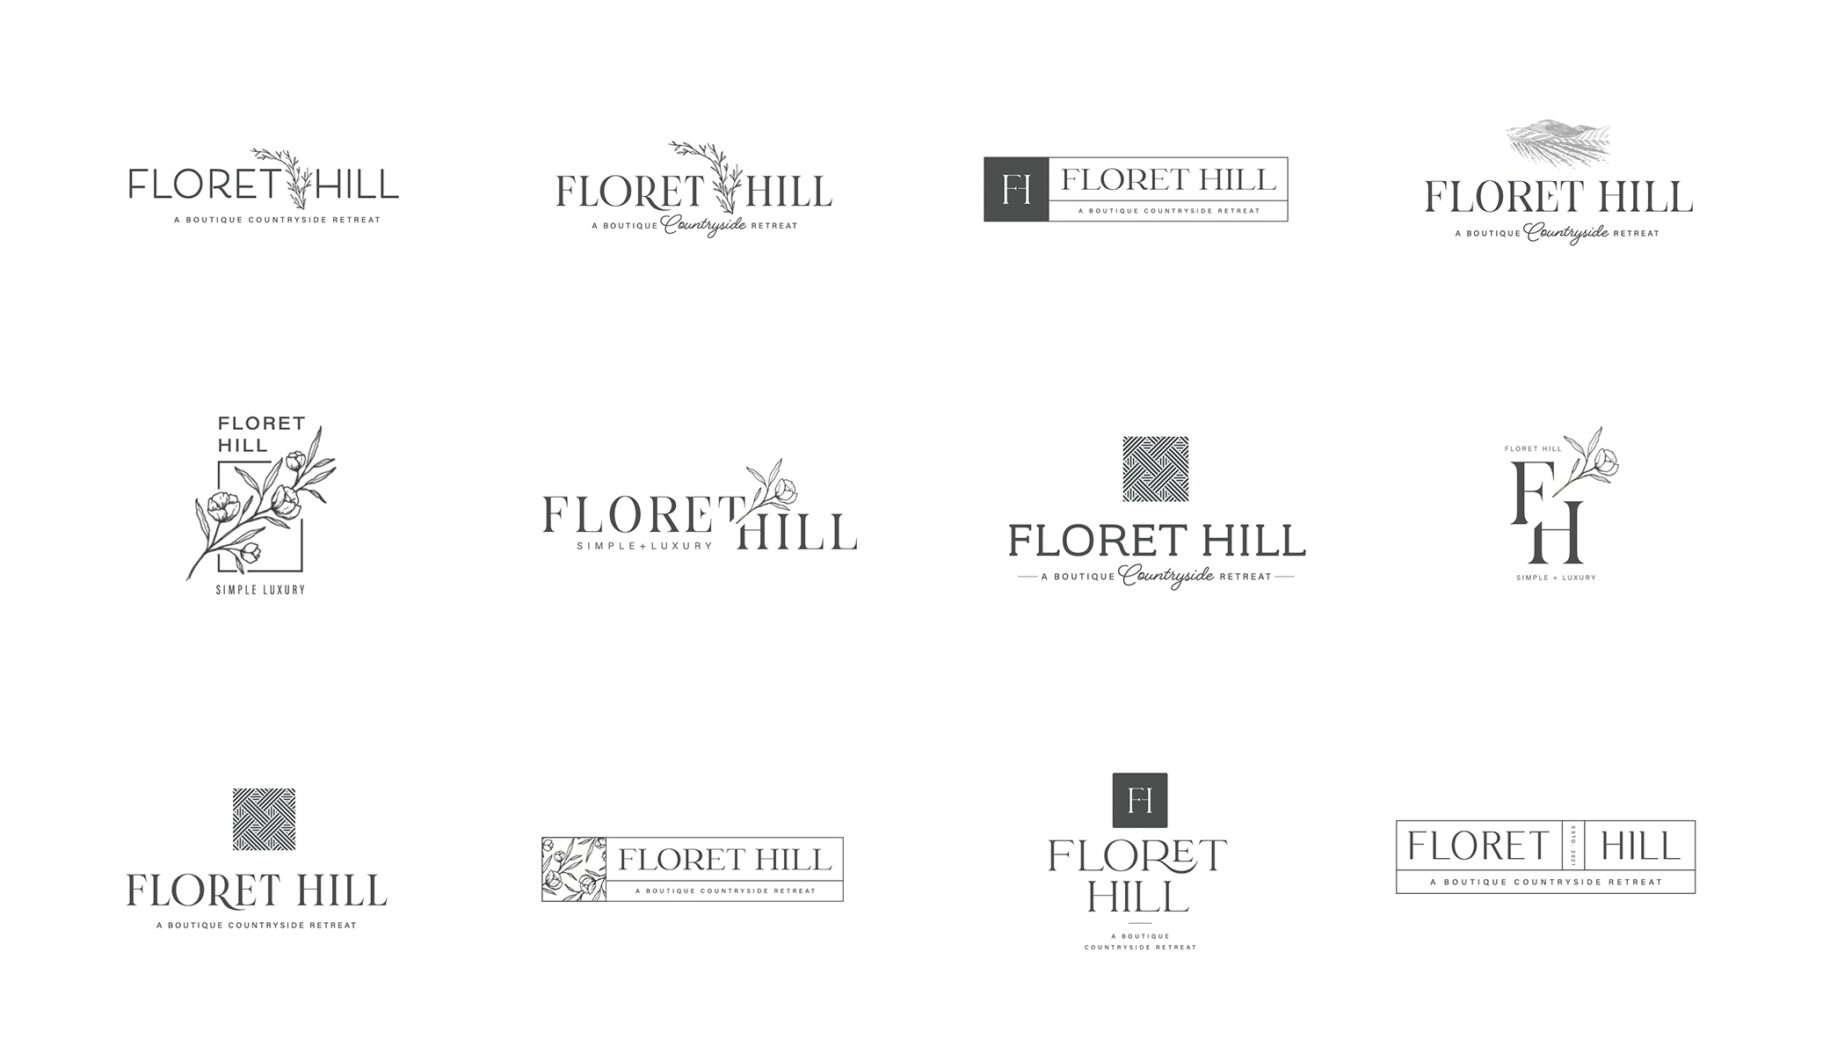 Floret Hill logo concepts